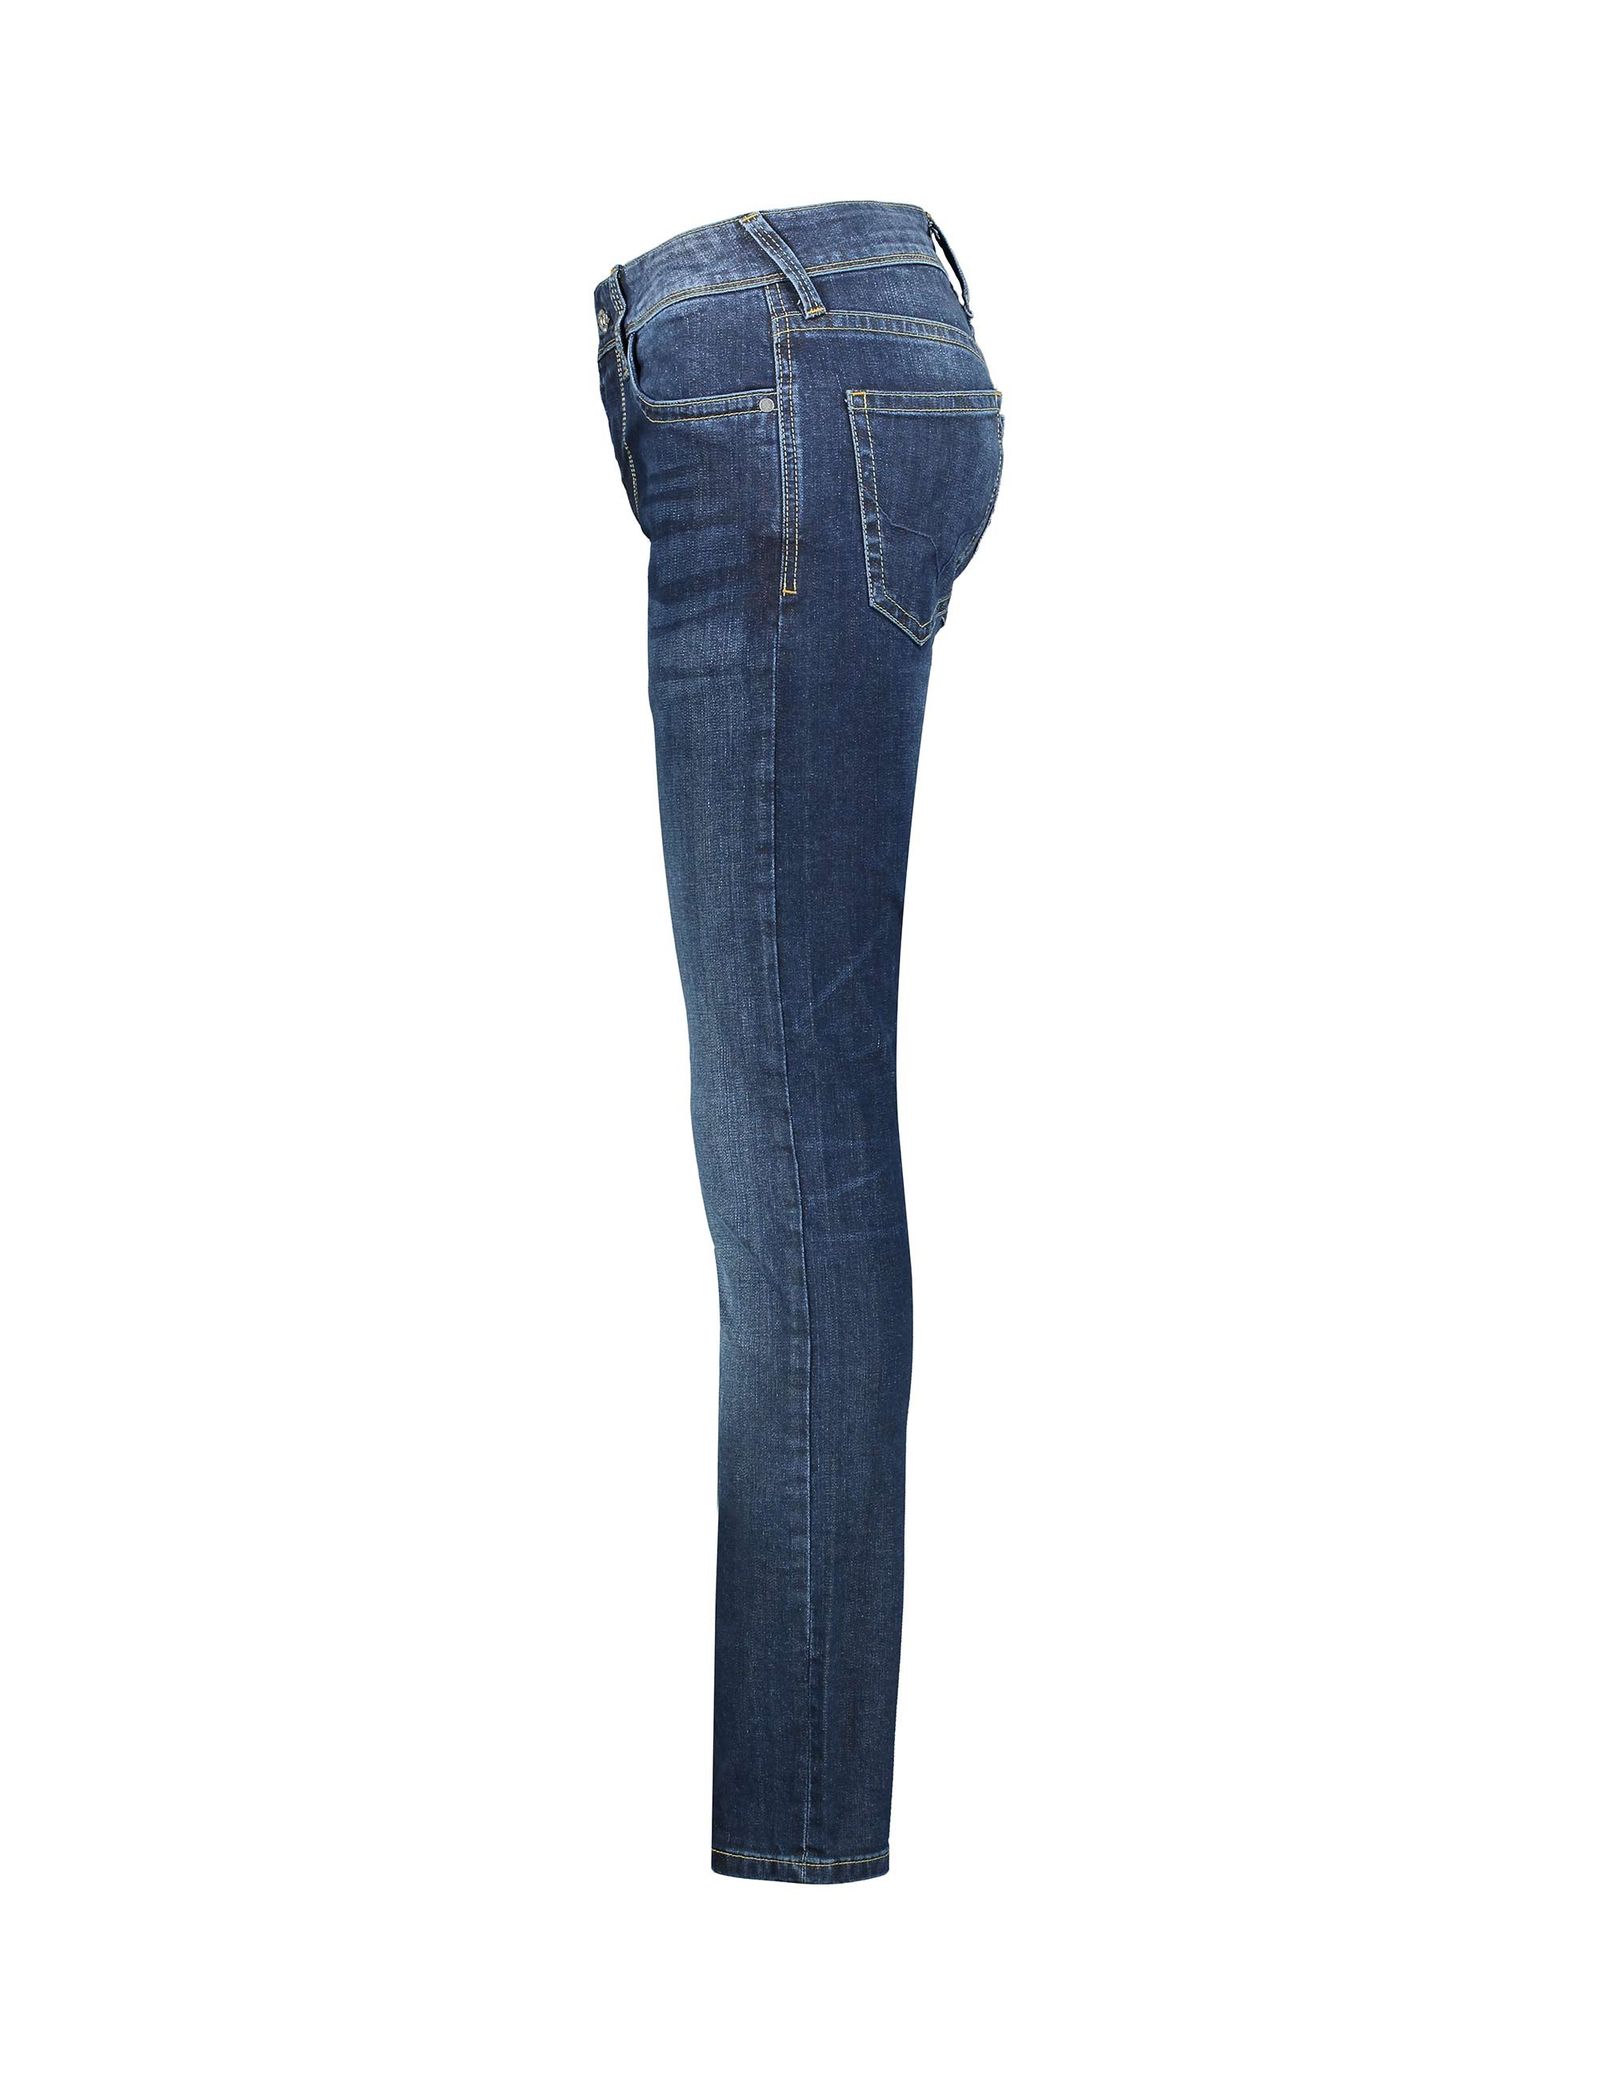 شلوار جین جذب مردانه - پپه جینز - آبي تيره - 4